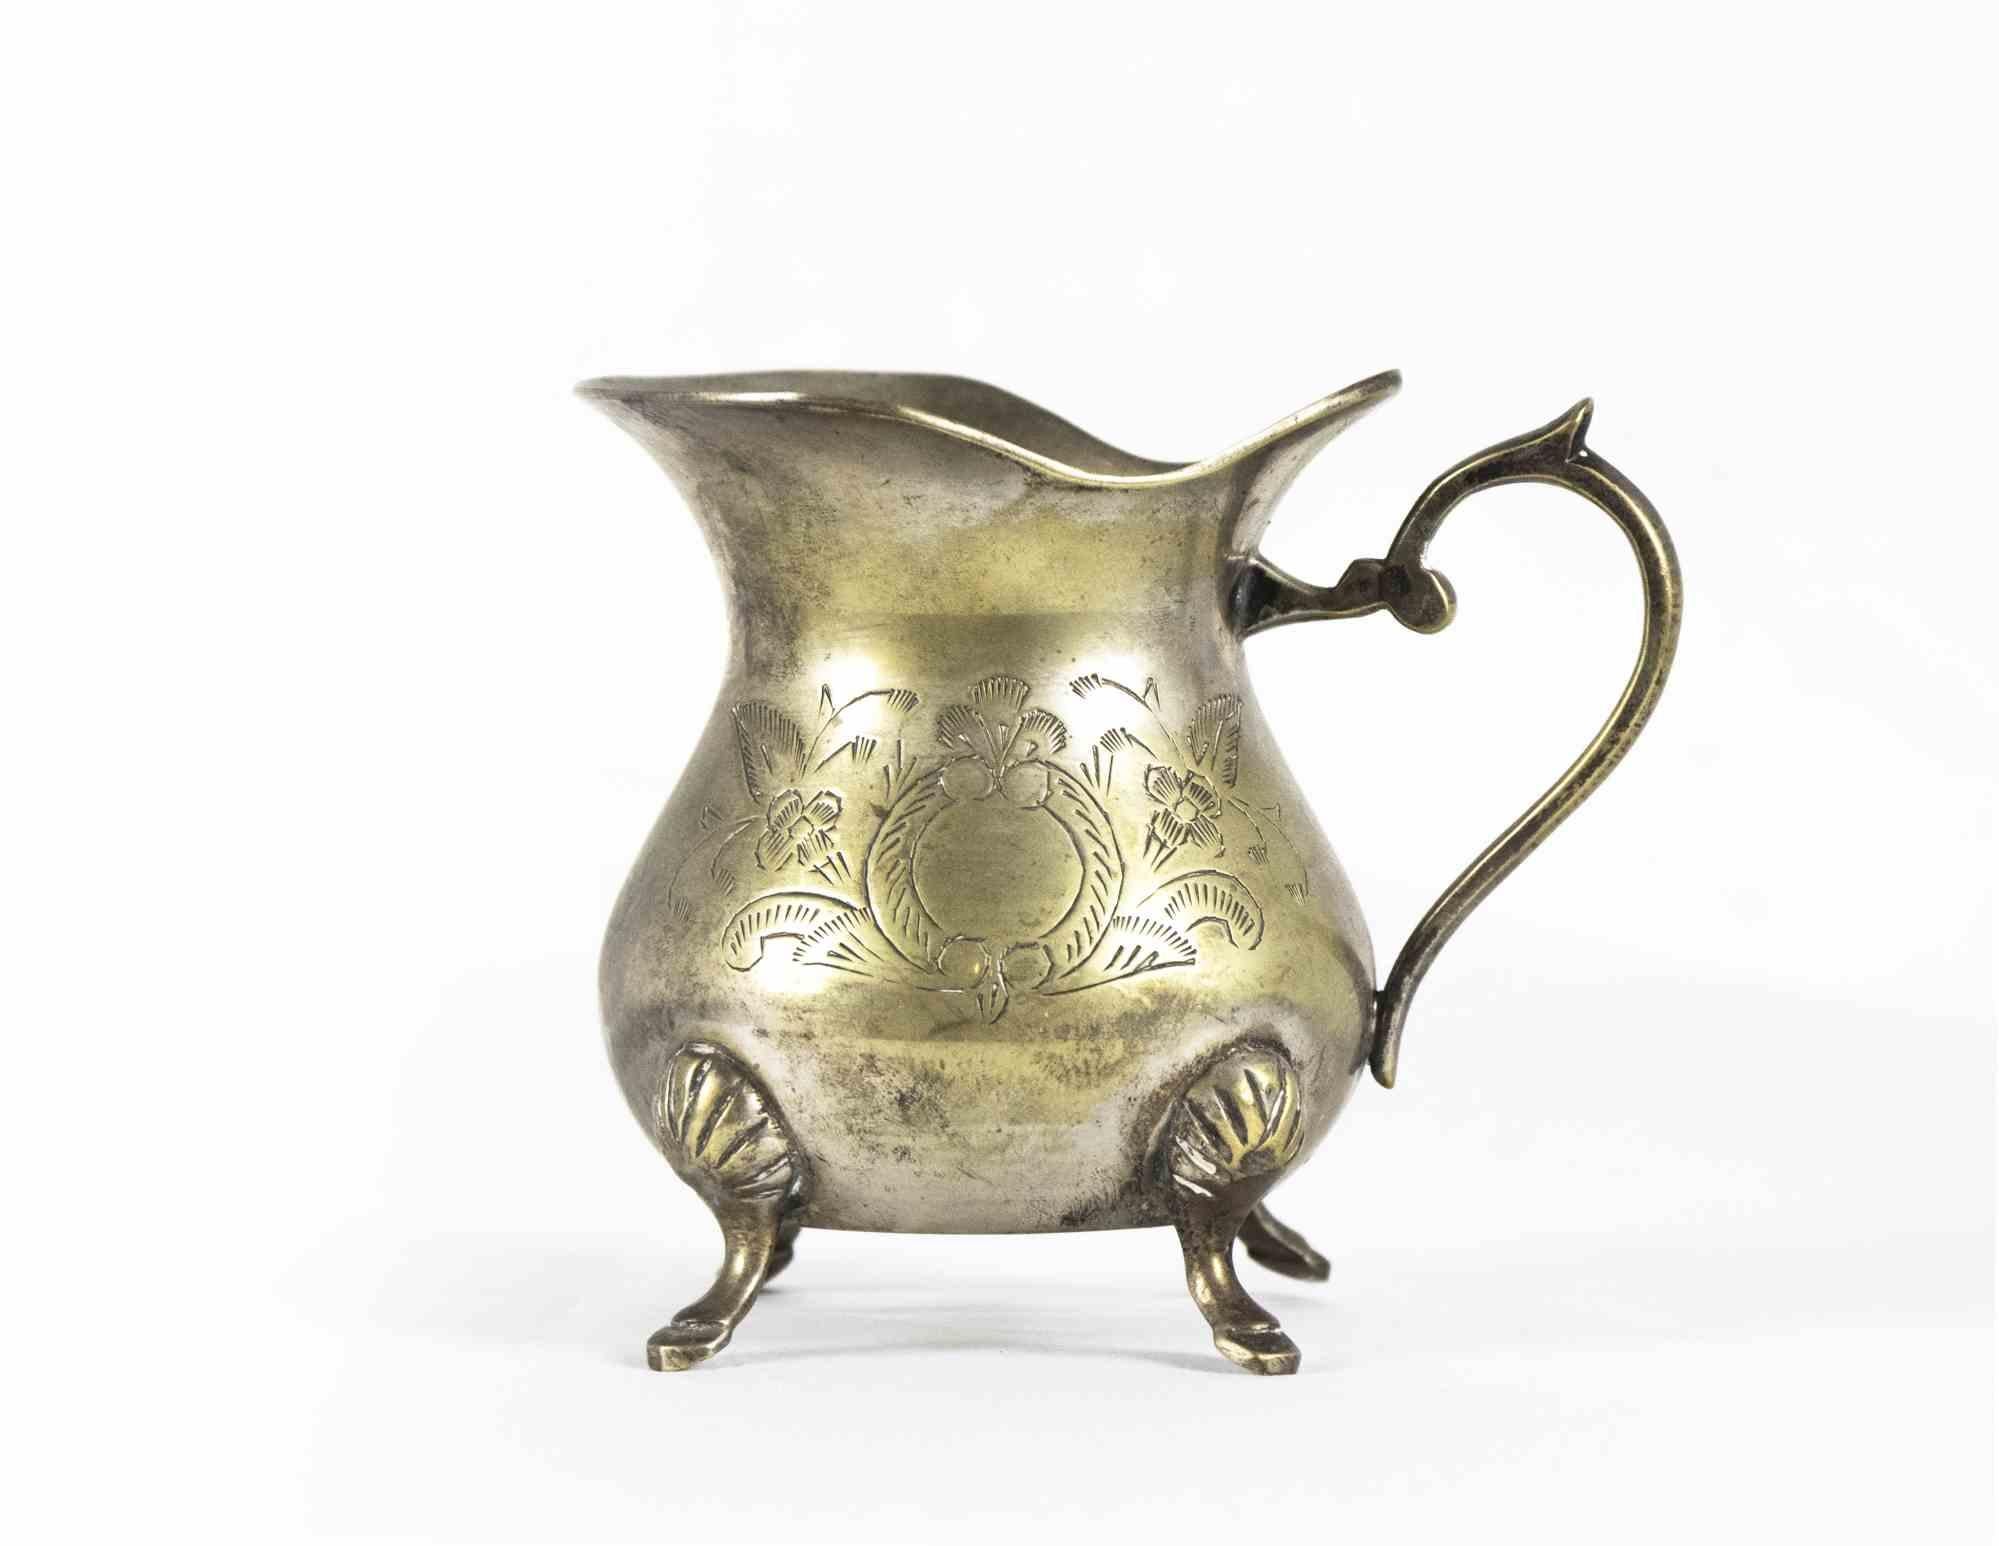 Le service à thé en laiton est un objet décoratif original réalisé en Europe au début du XXe siècle.

L'ensemble est réalisé en laiton avec des décorations ciselées. 

L'ensemble comprend : une théière, une cafetière, un sucrier, un sucrier et